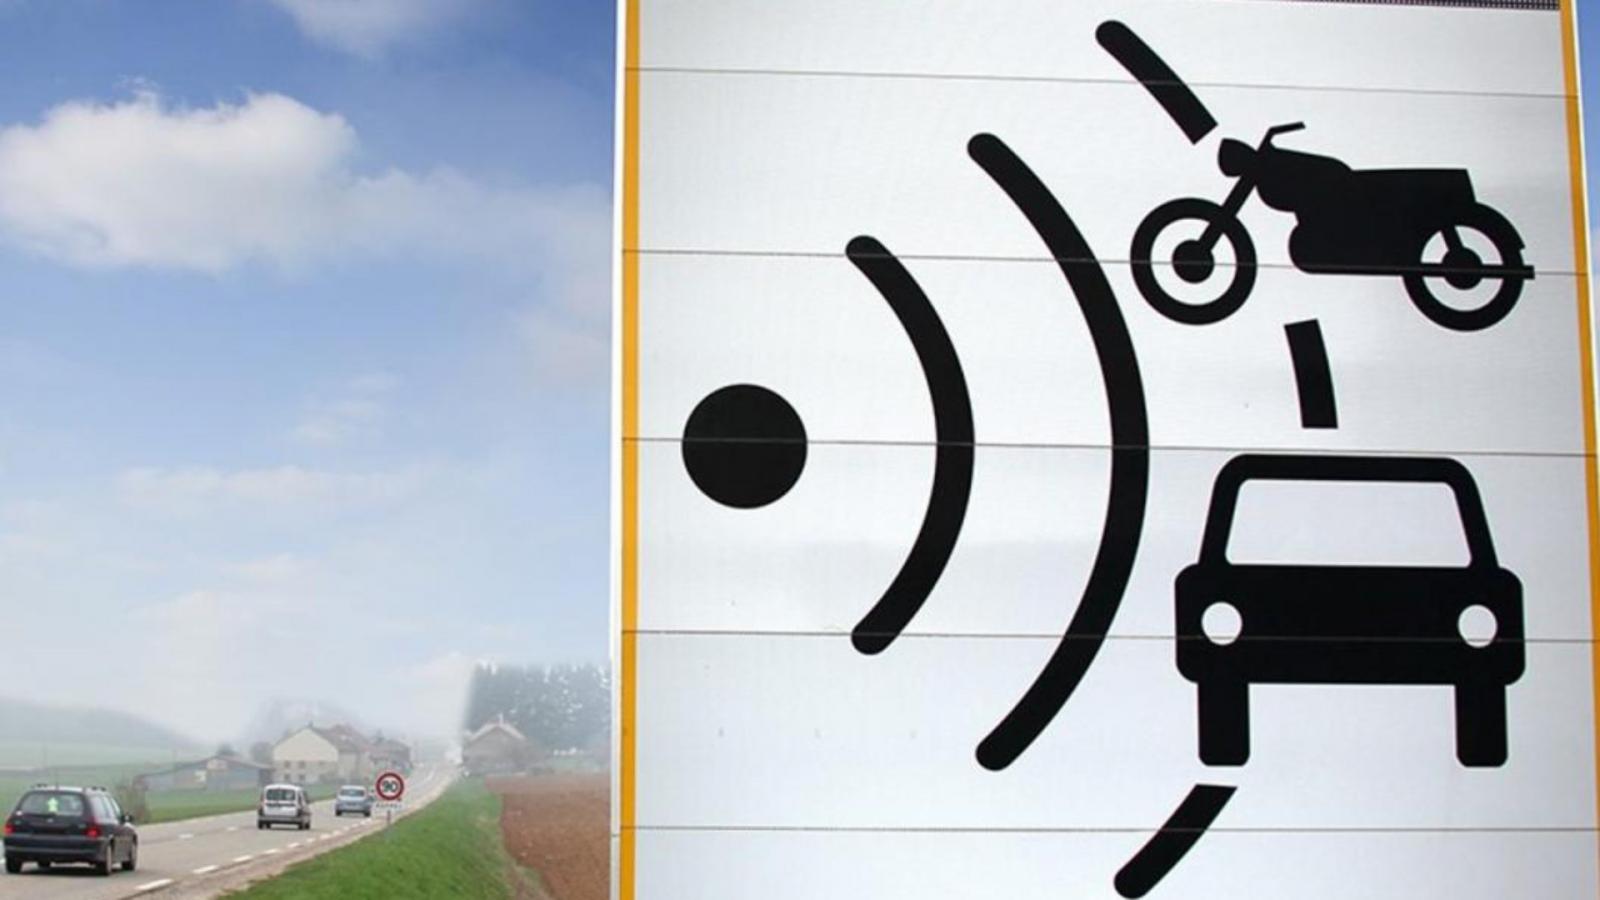 Όχι δεν είναι wi-fi: Για τι μας προειδοποιεί αυτή η πινακίδα που βλέπουμε στους δρόμους;